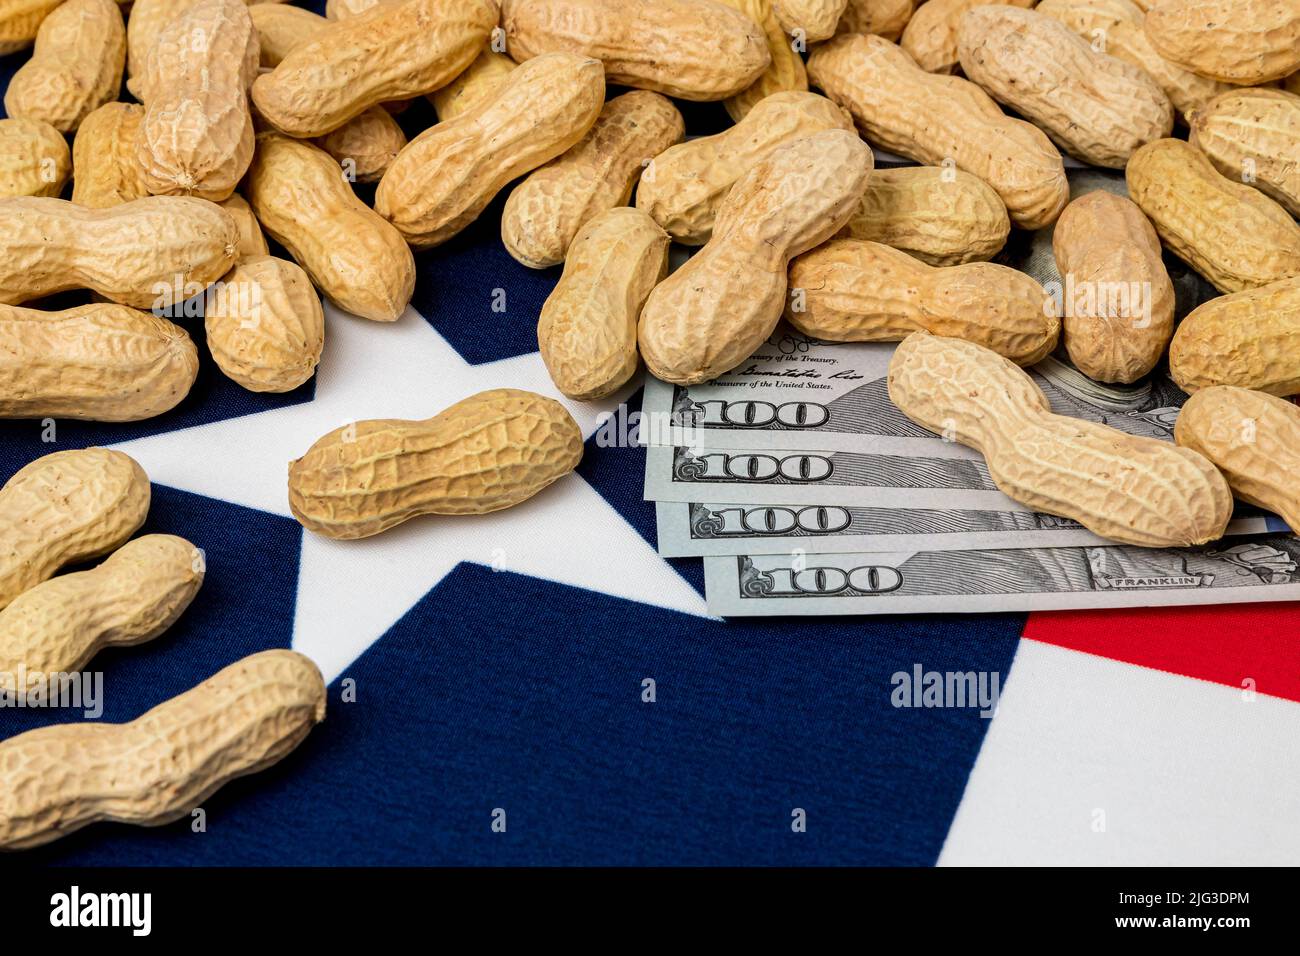 Cacahuetes en cáscara en bandera de Texas con billetes de 100 dólares. Concepto de cultivo de cacahuetes, comercio, aranceles y precios de mercado. Foto de stock